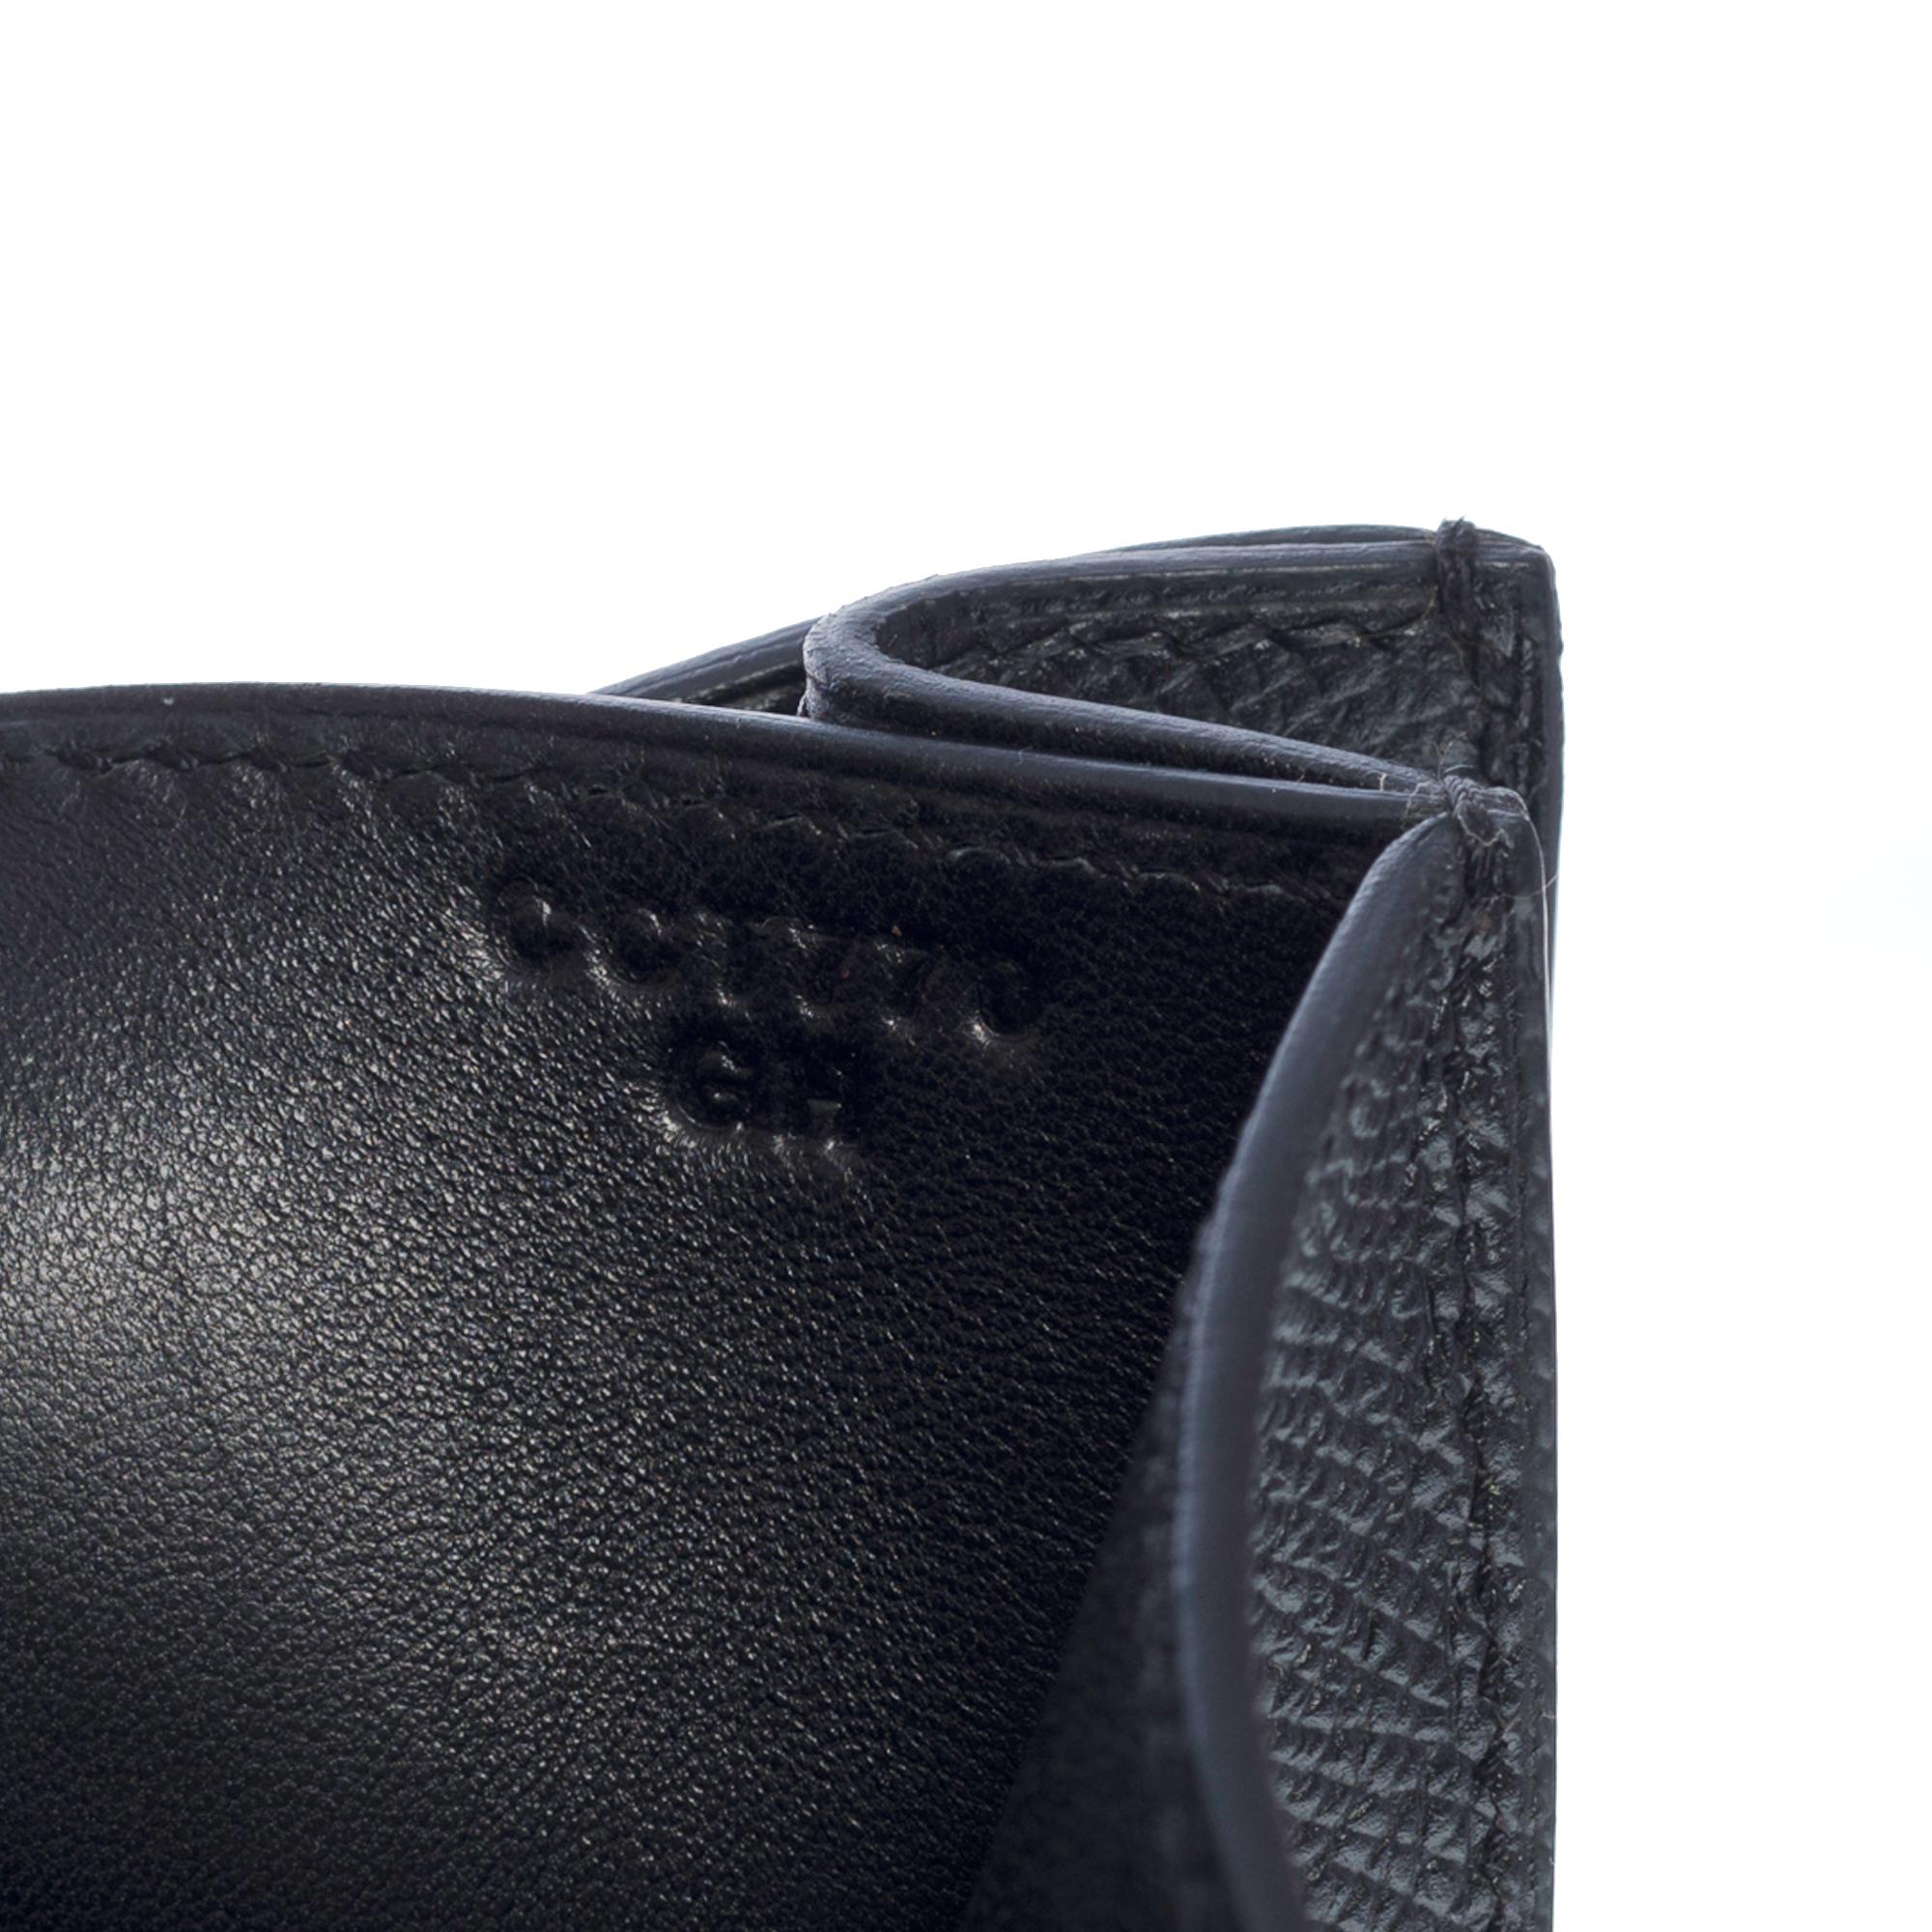 Gorgeous Hermès Constance shoulder bag in black epsom leather , GHW 3